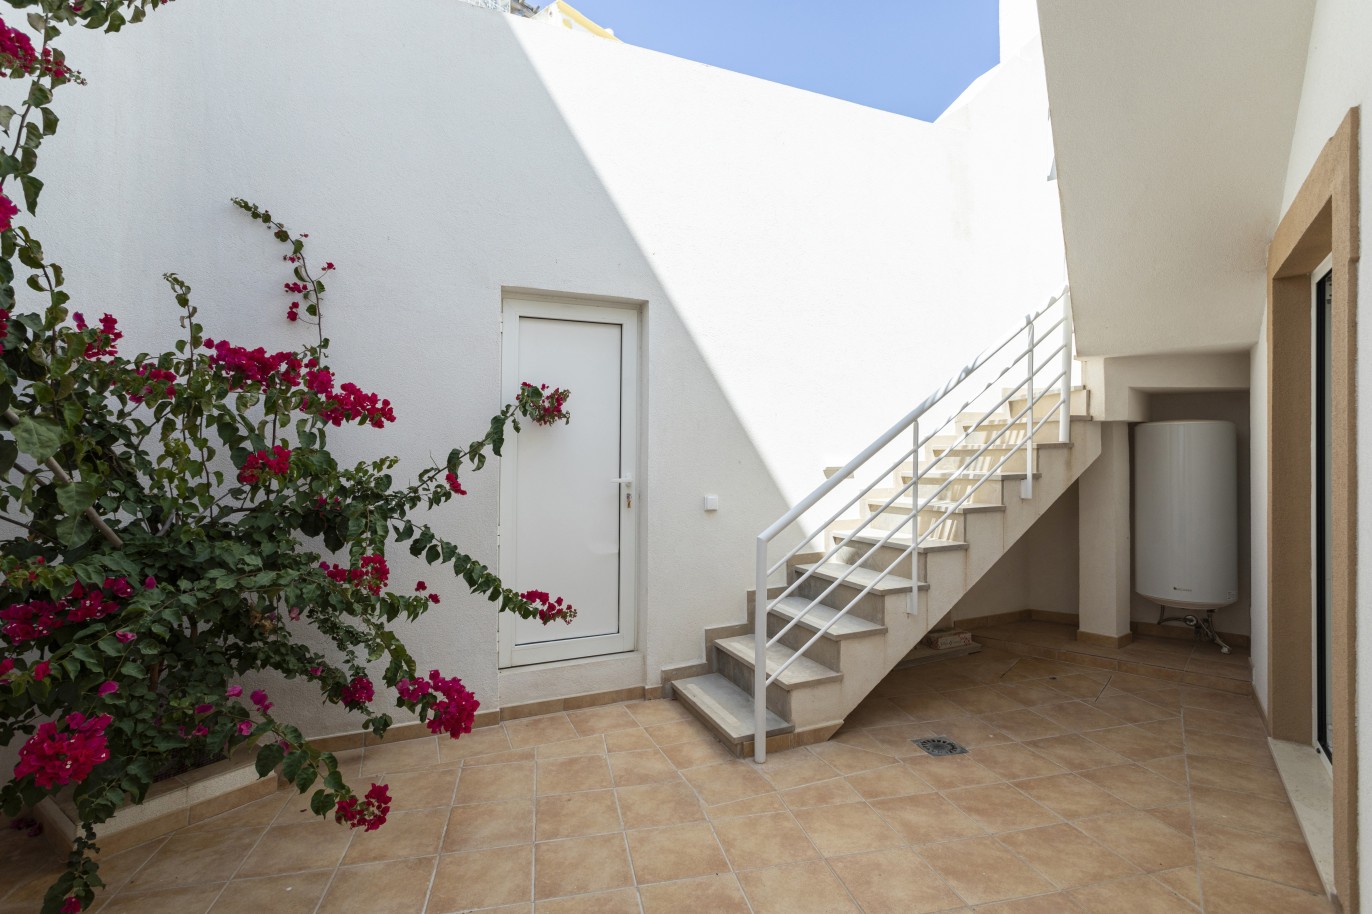 Renovierte Villa mit 3 Schlafzimmern zu verkaufen in der Innenstadt von Olhão, Algarve_227461